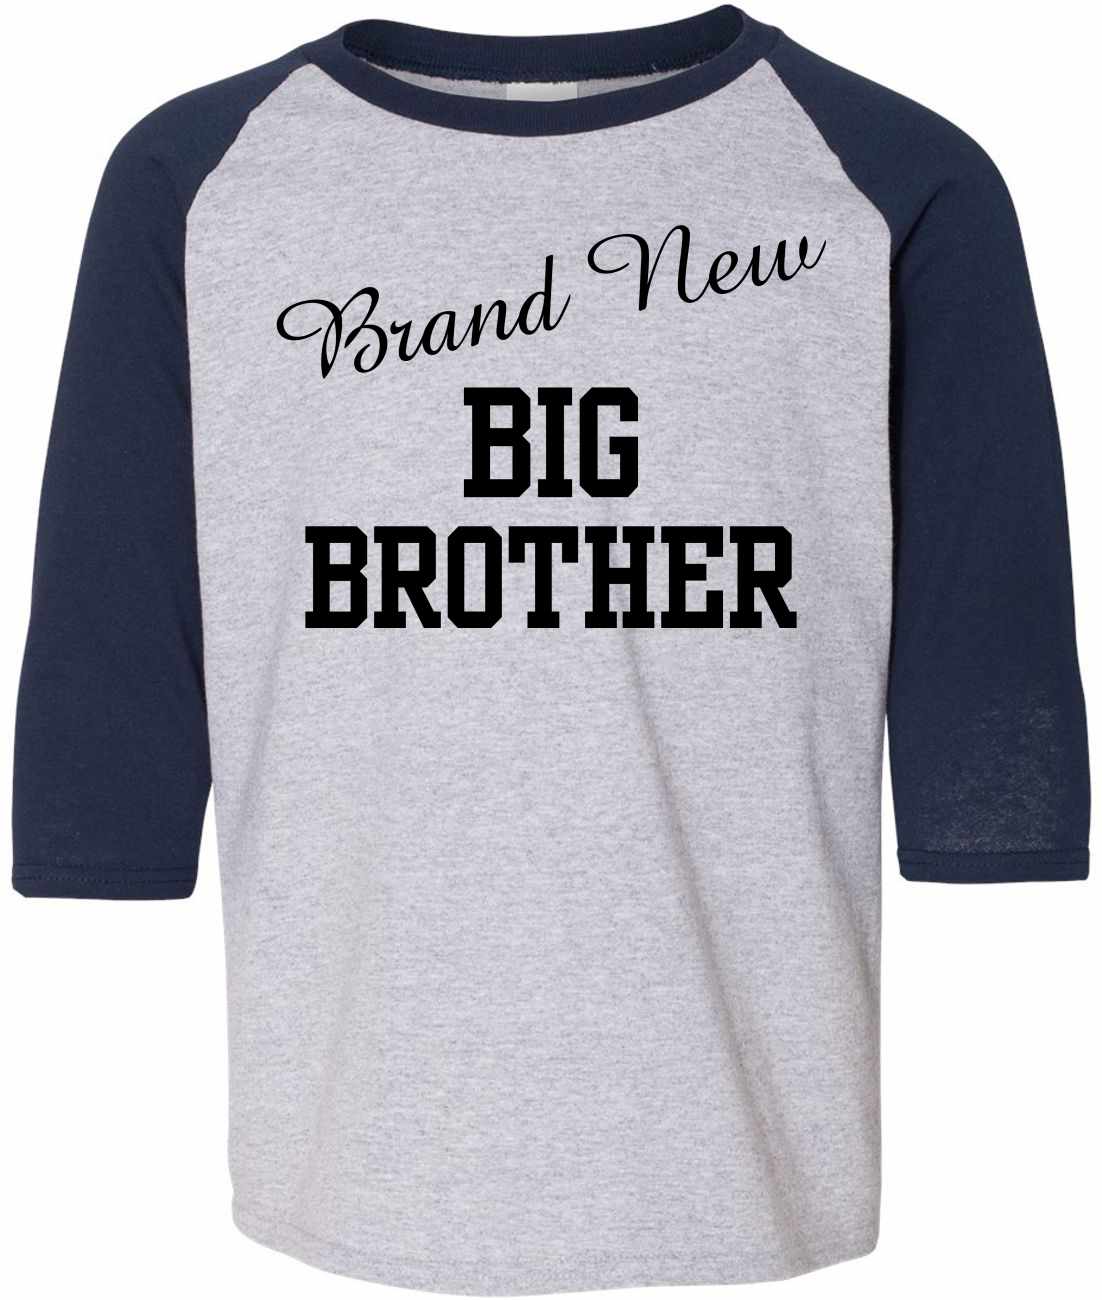 Brand New Big Brother on Youth Baseball Shirt (#999-212)